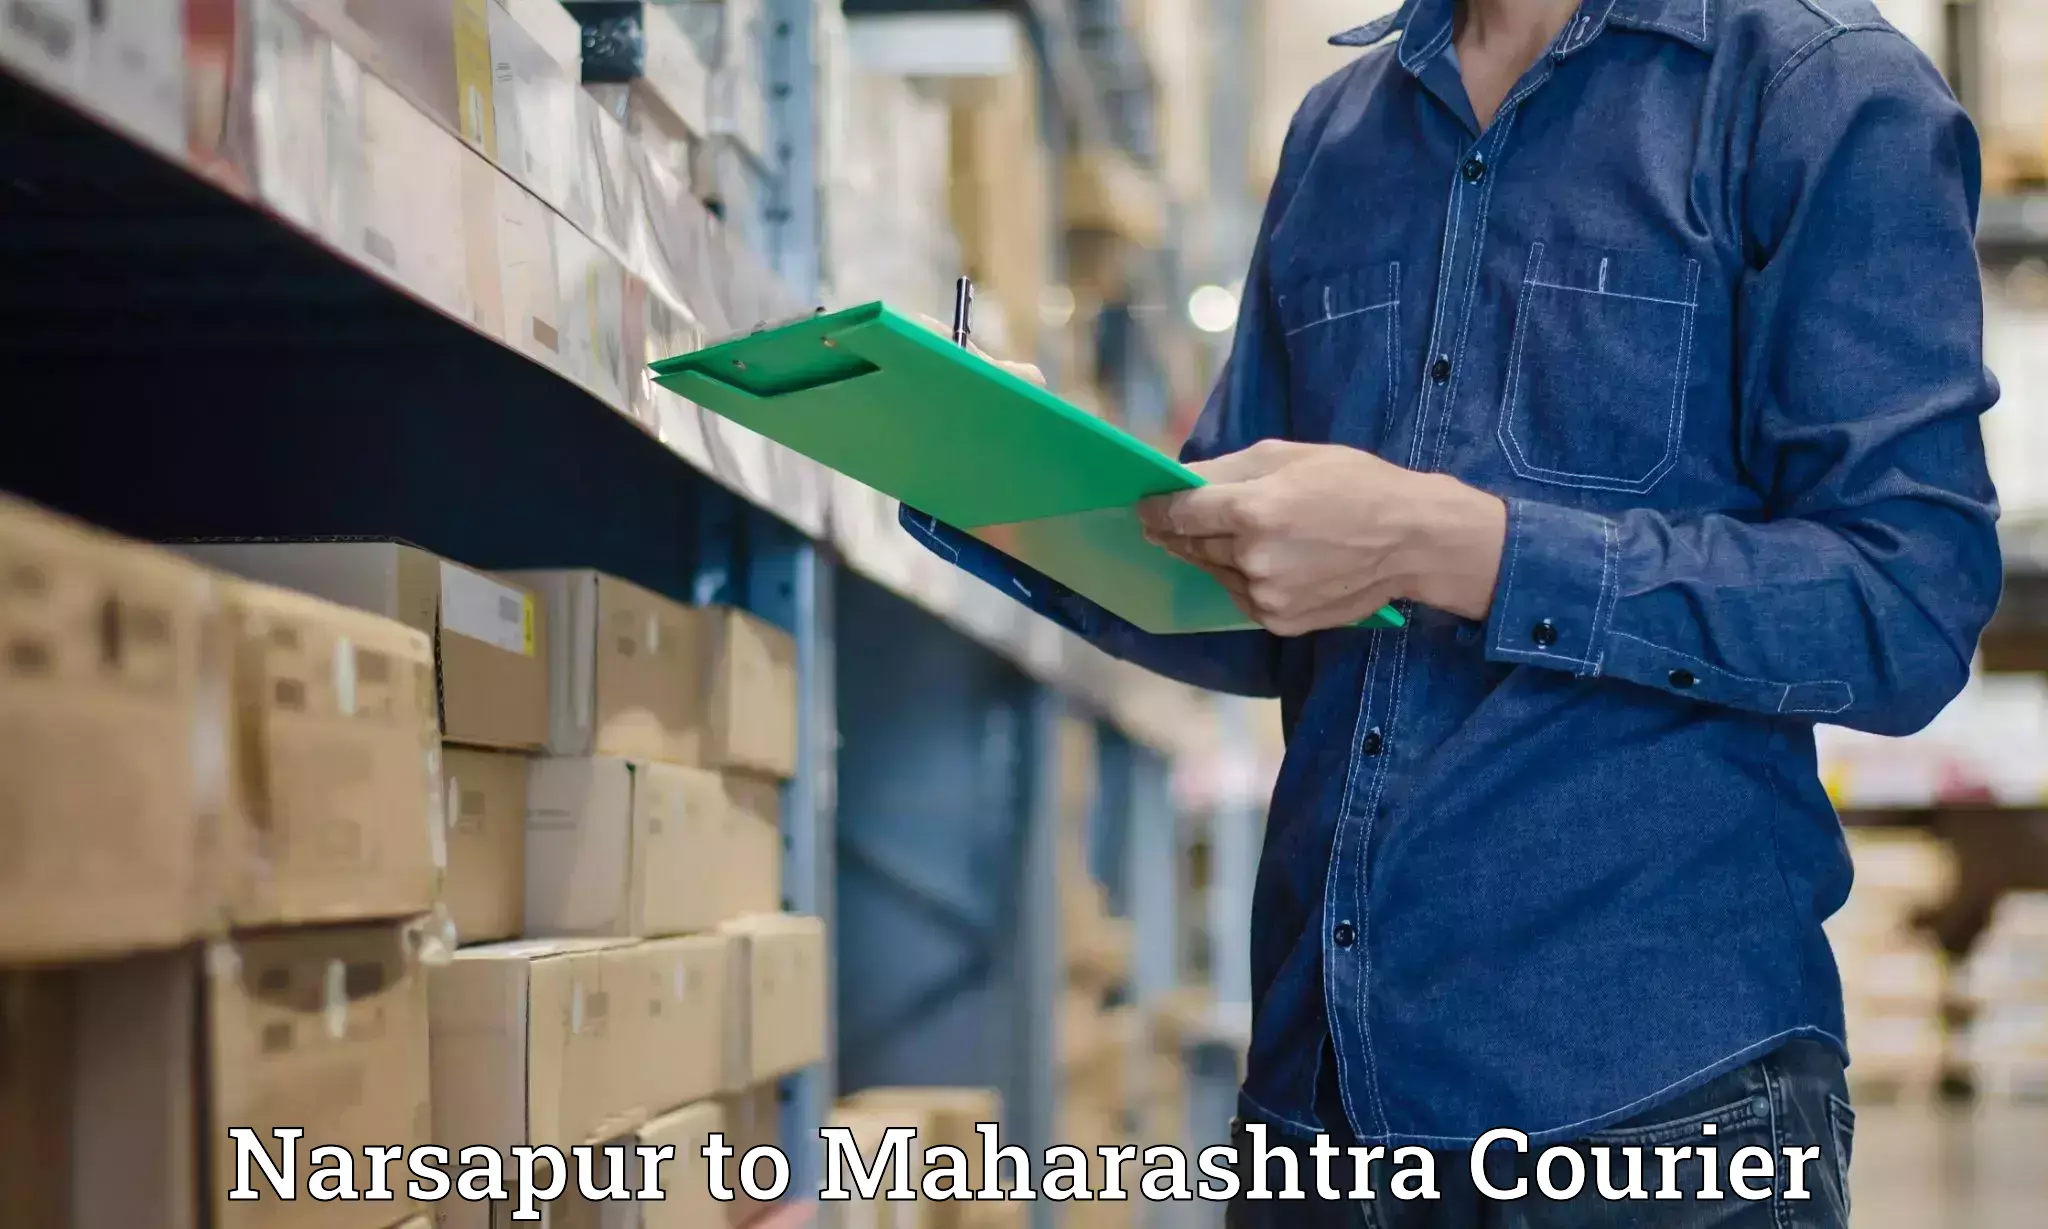 Courier service innovation Narsapur to Maharashtra